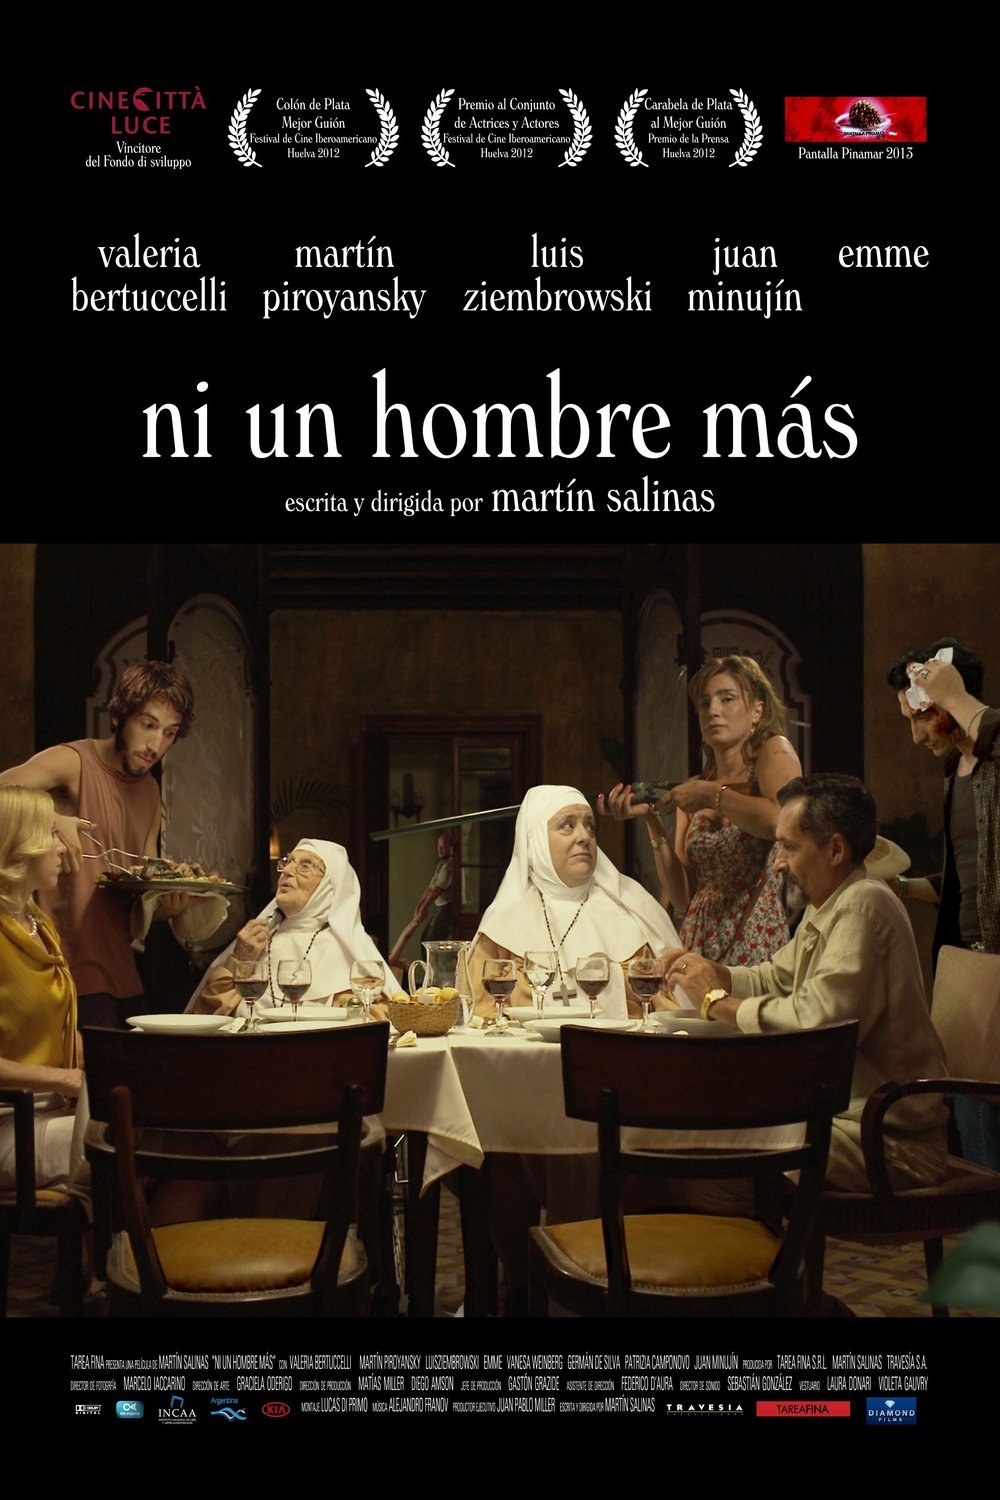 Spanish poster of the movie Ni un hombre más